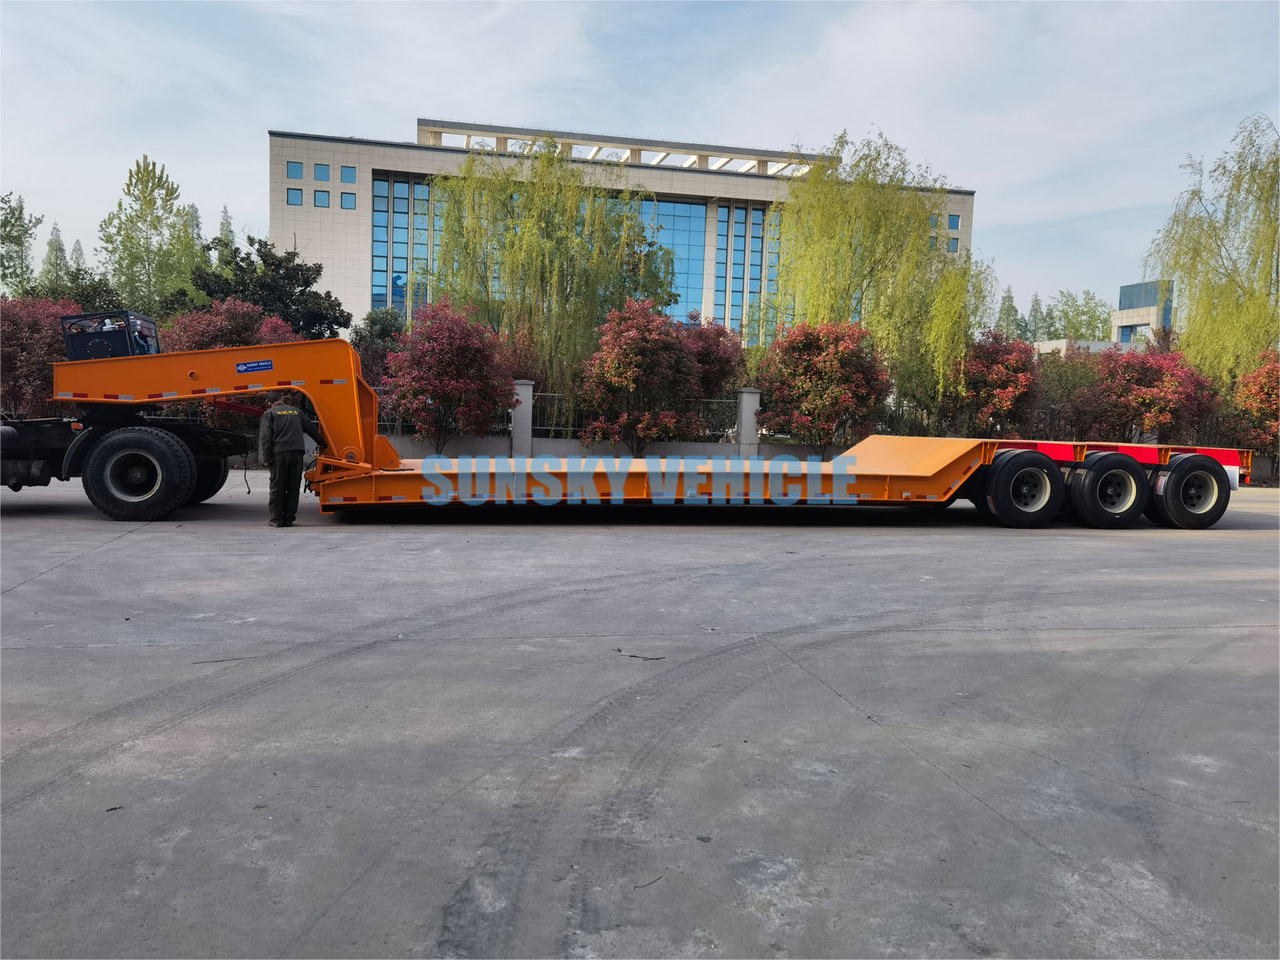 Новый Низкорамный полуприцеп для транспортировки тяжёлой техники SUNSKY 3 Axle 70 Tons detachable gooseneck lowbed trailer: фото 5